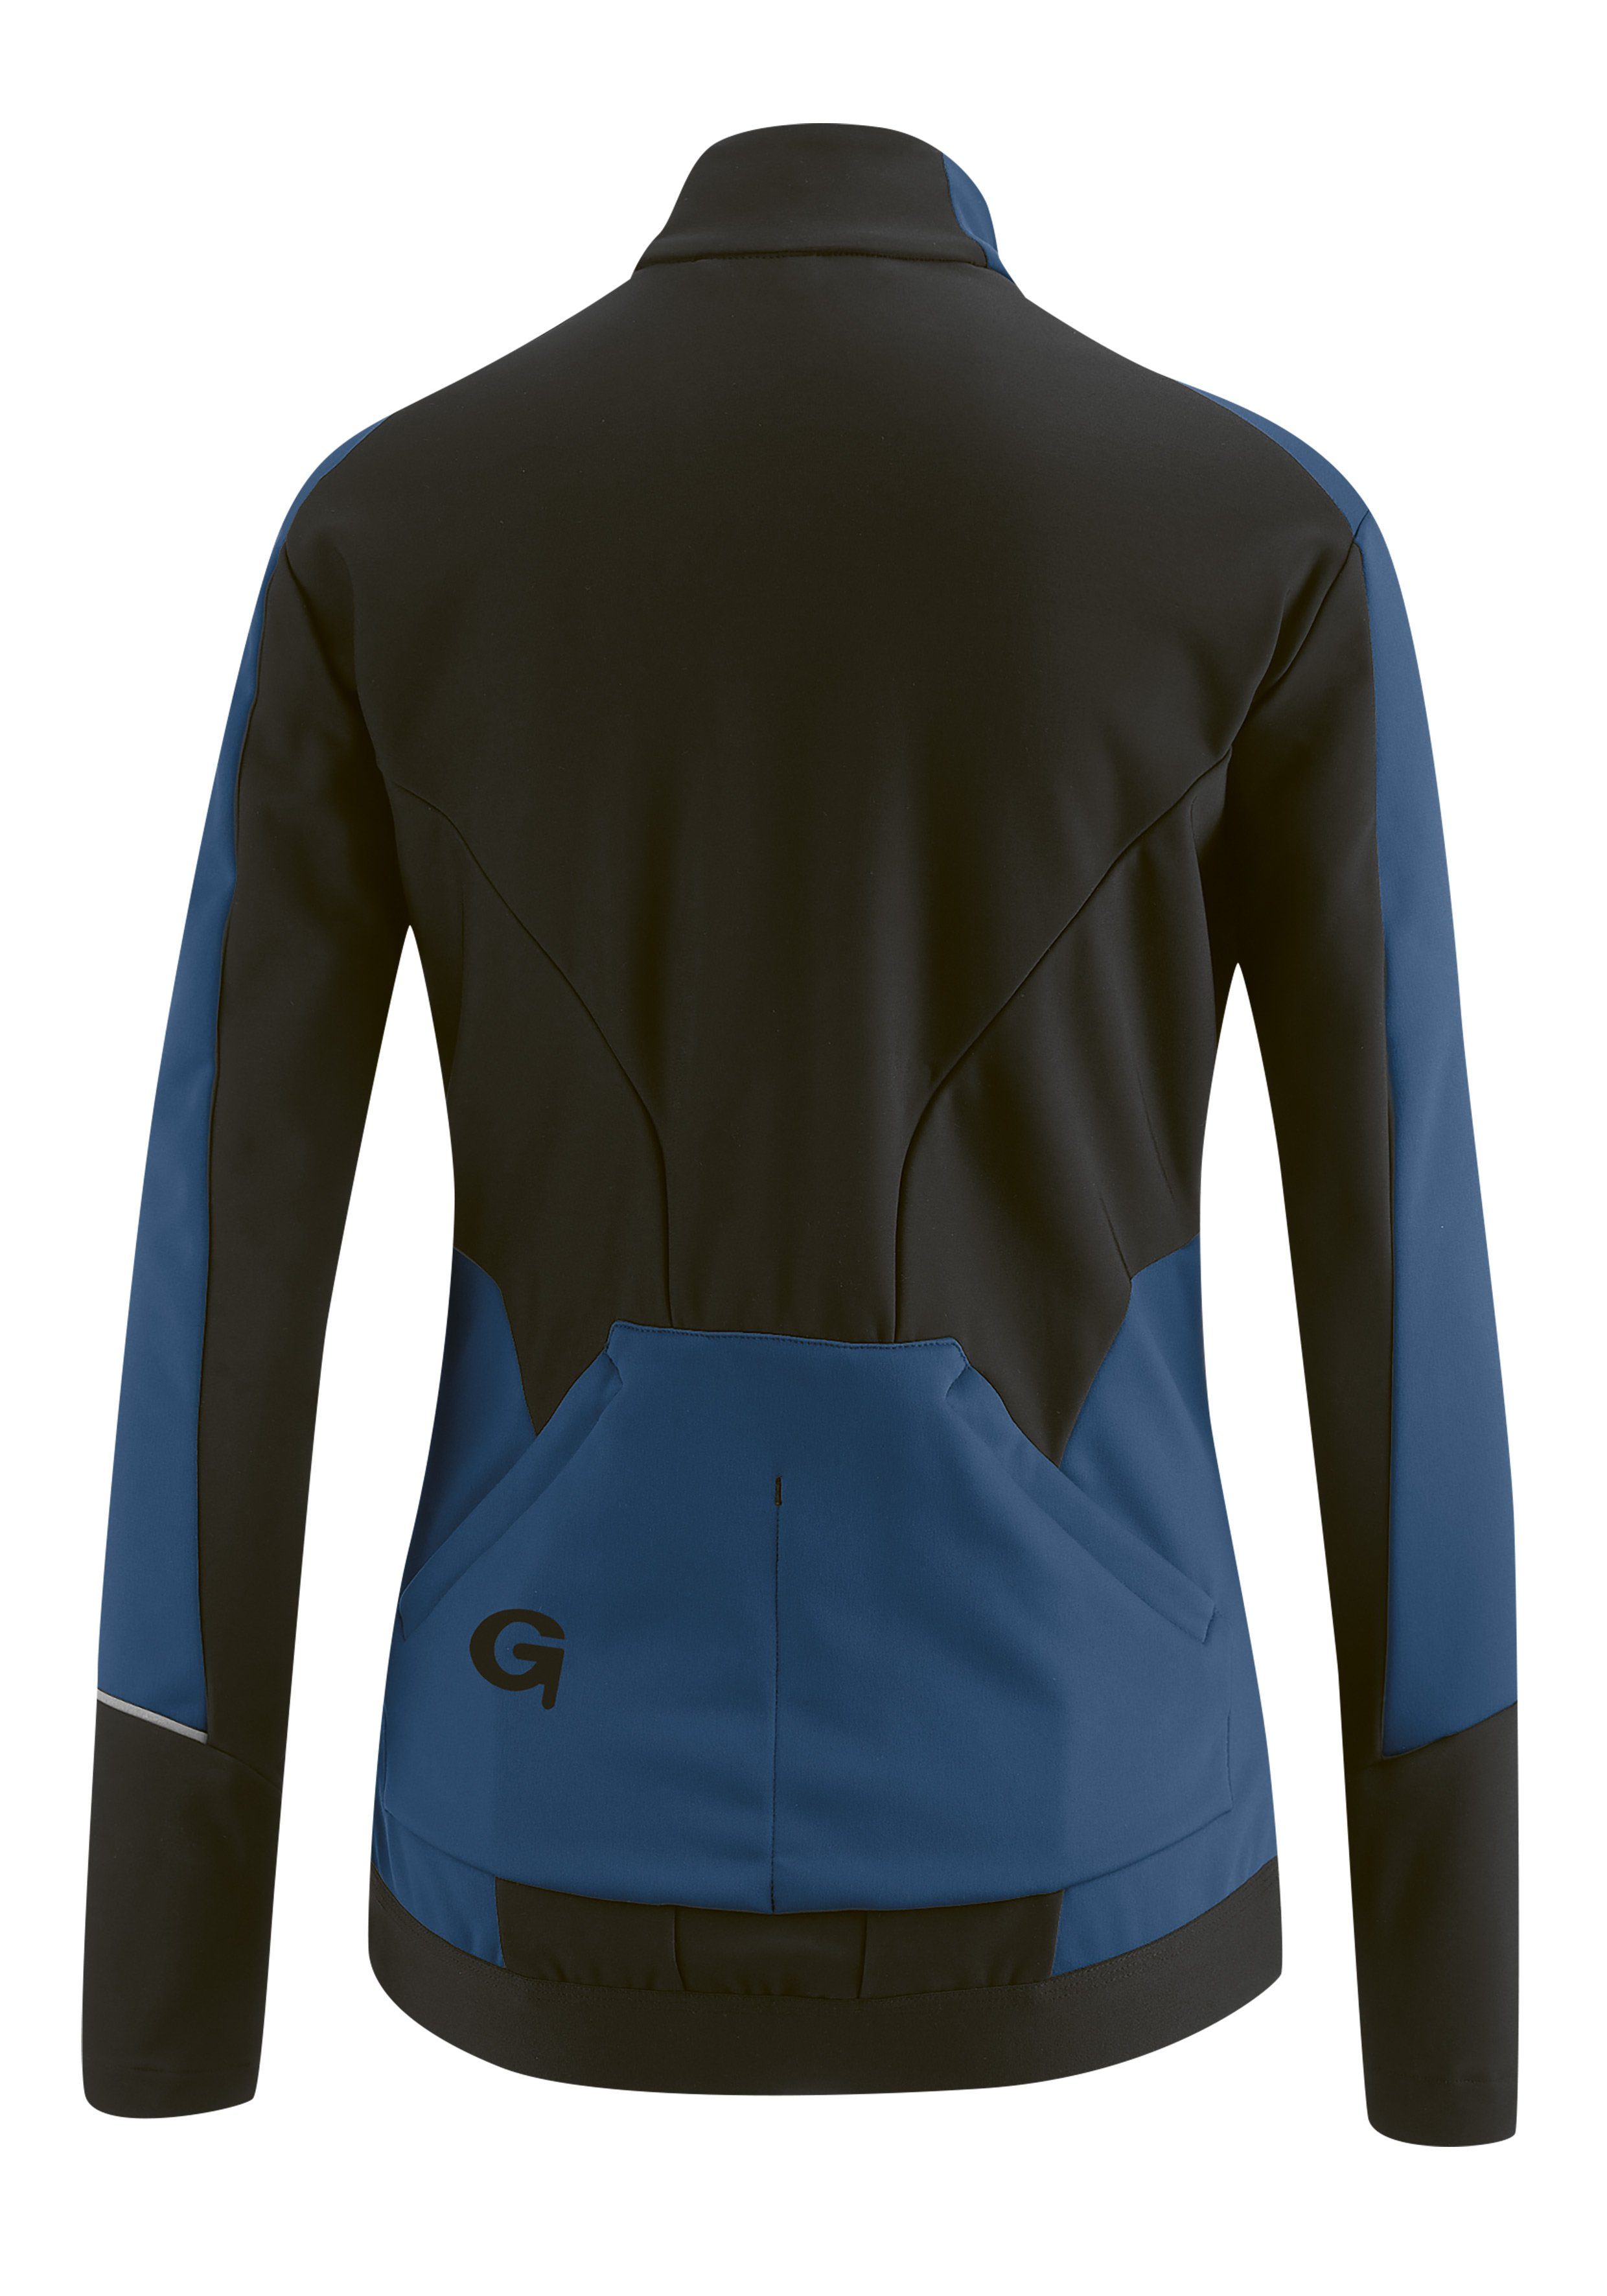 atmungsaktiv FURIANI Gonso dunkelblau und Softshell-Jacke, Fahrradjacke wasserabweisend Windjacke Damen